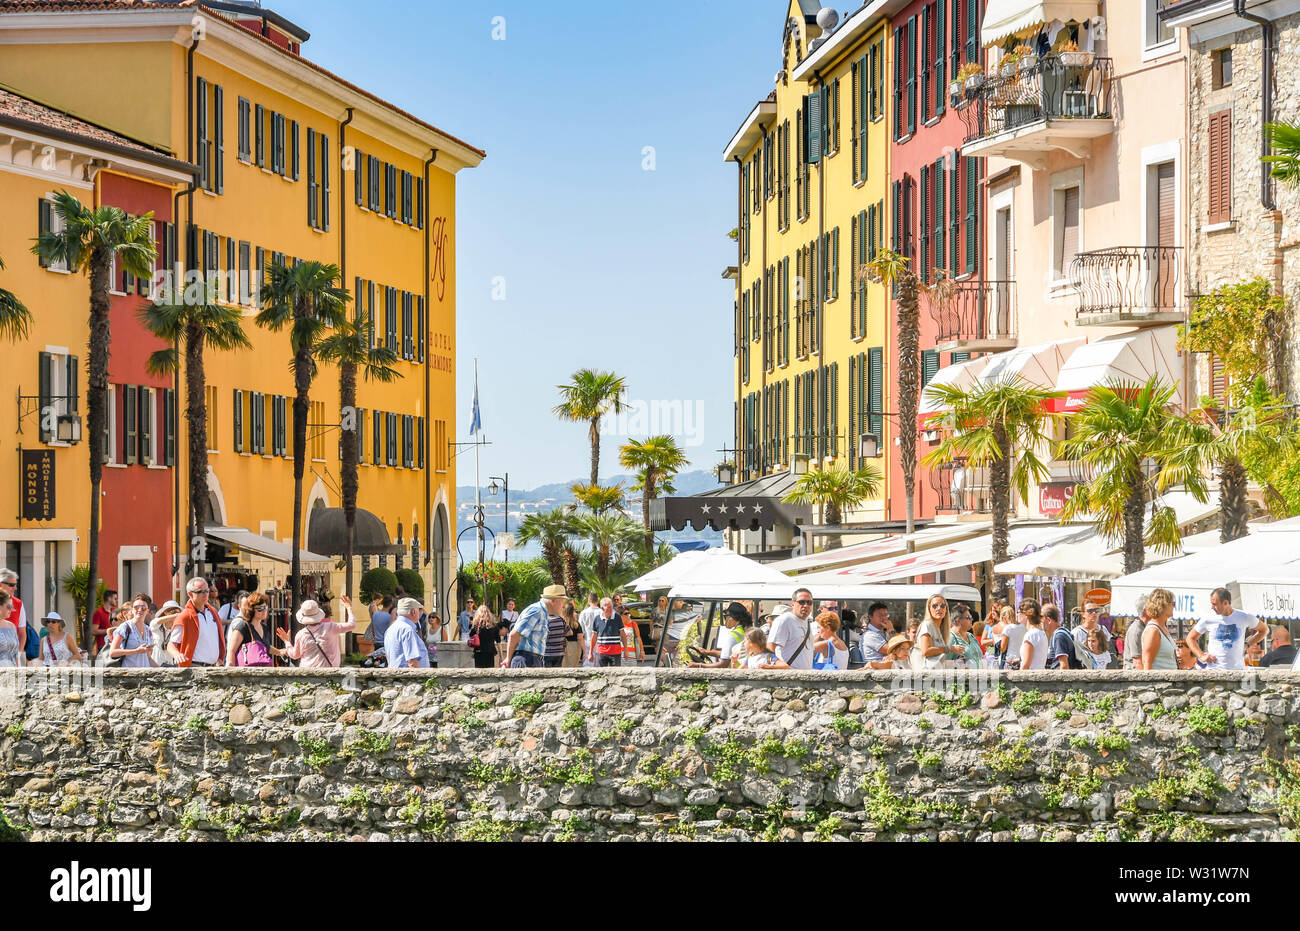 SIRMIONE SUL LAGO DI GARDA, Italia - Settembre 2018: una folla di persone a piedi attraverso Sirmione sul Lago di Garda di fronte edifici colorati Foto Stock